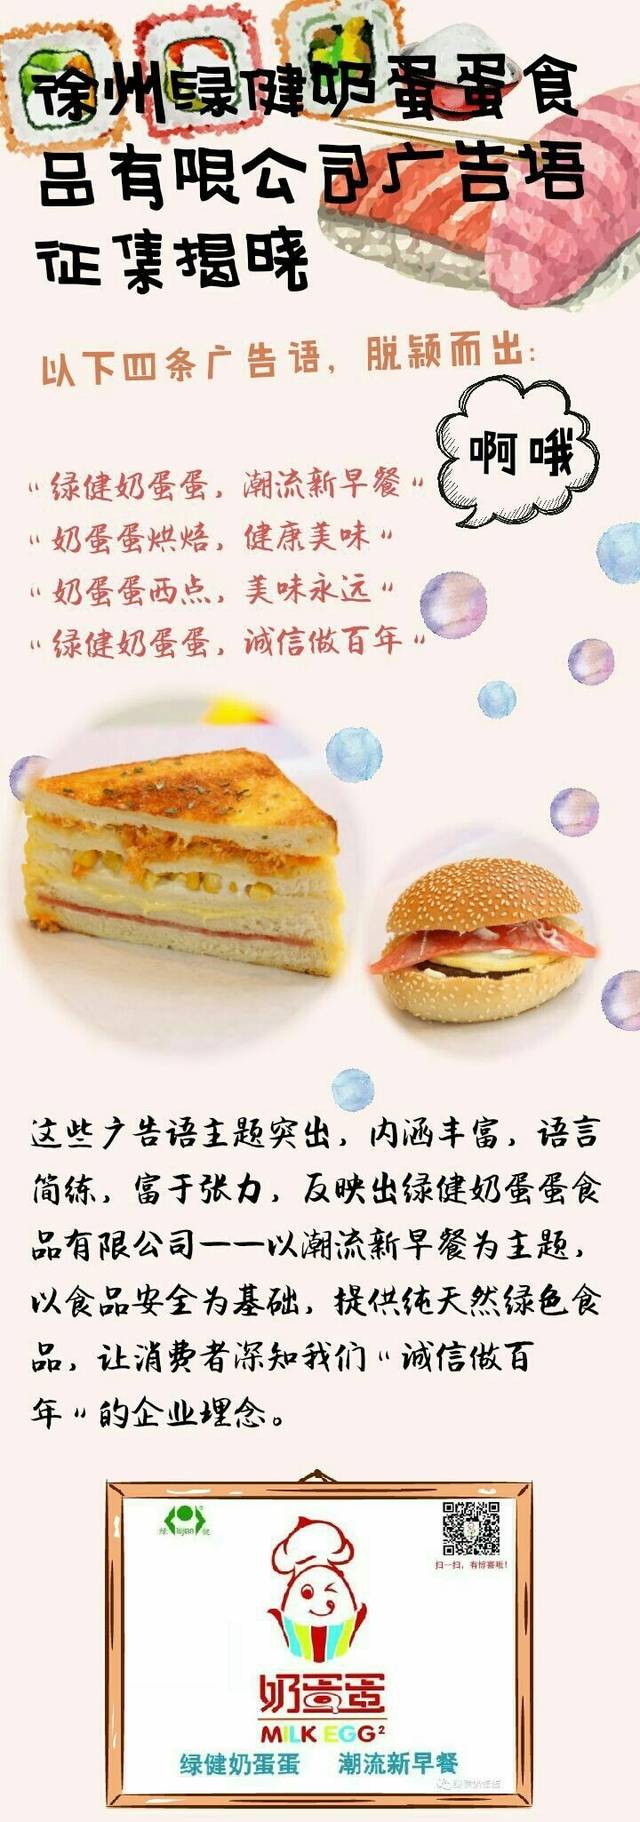 徐州绿健奶蛋蛋食品有限公司广告语征集揭晓